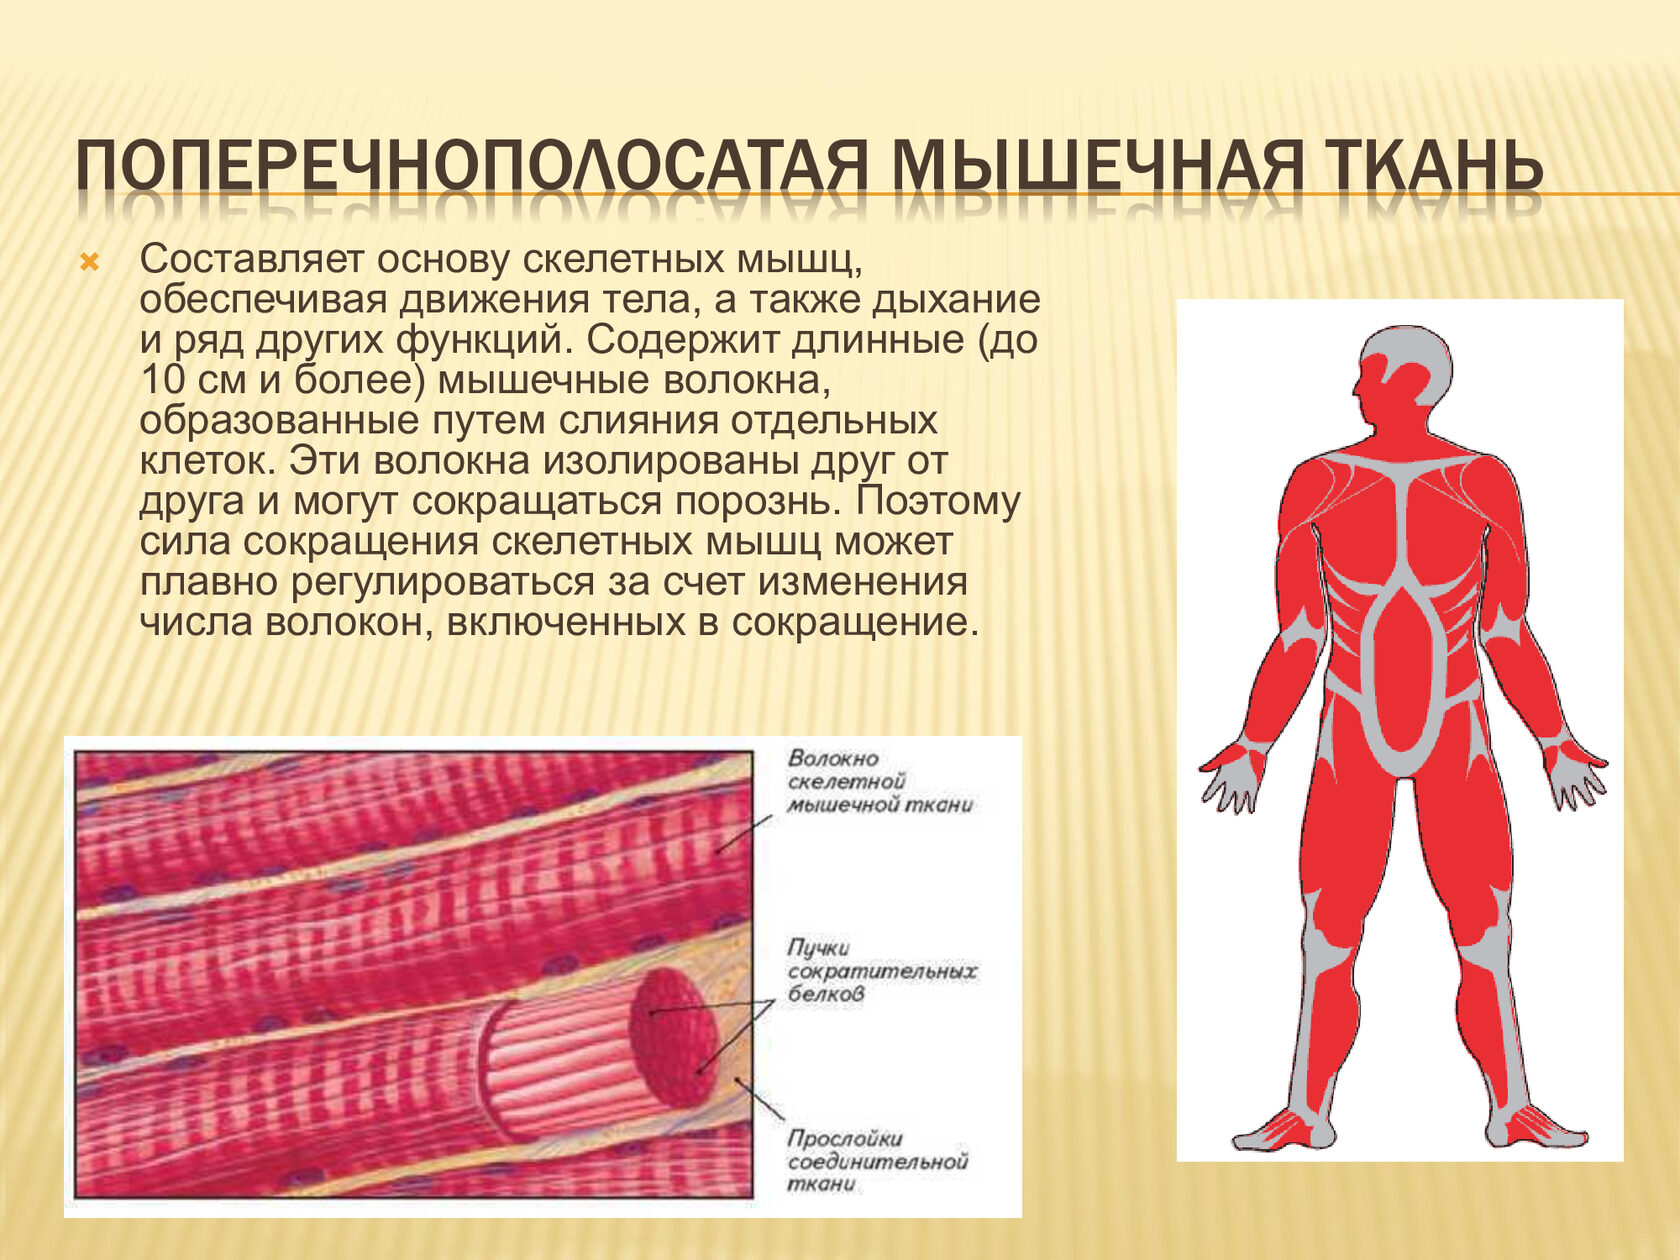 Заболевания мышечной ткани. 8. Поперечнополосатая Скелетная мышечная ткань.. Что образует Скелетная поперечно полосатая мышечная ткань. Поперечнополосатая машца. Поперечнополасатая мускулатура.